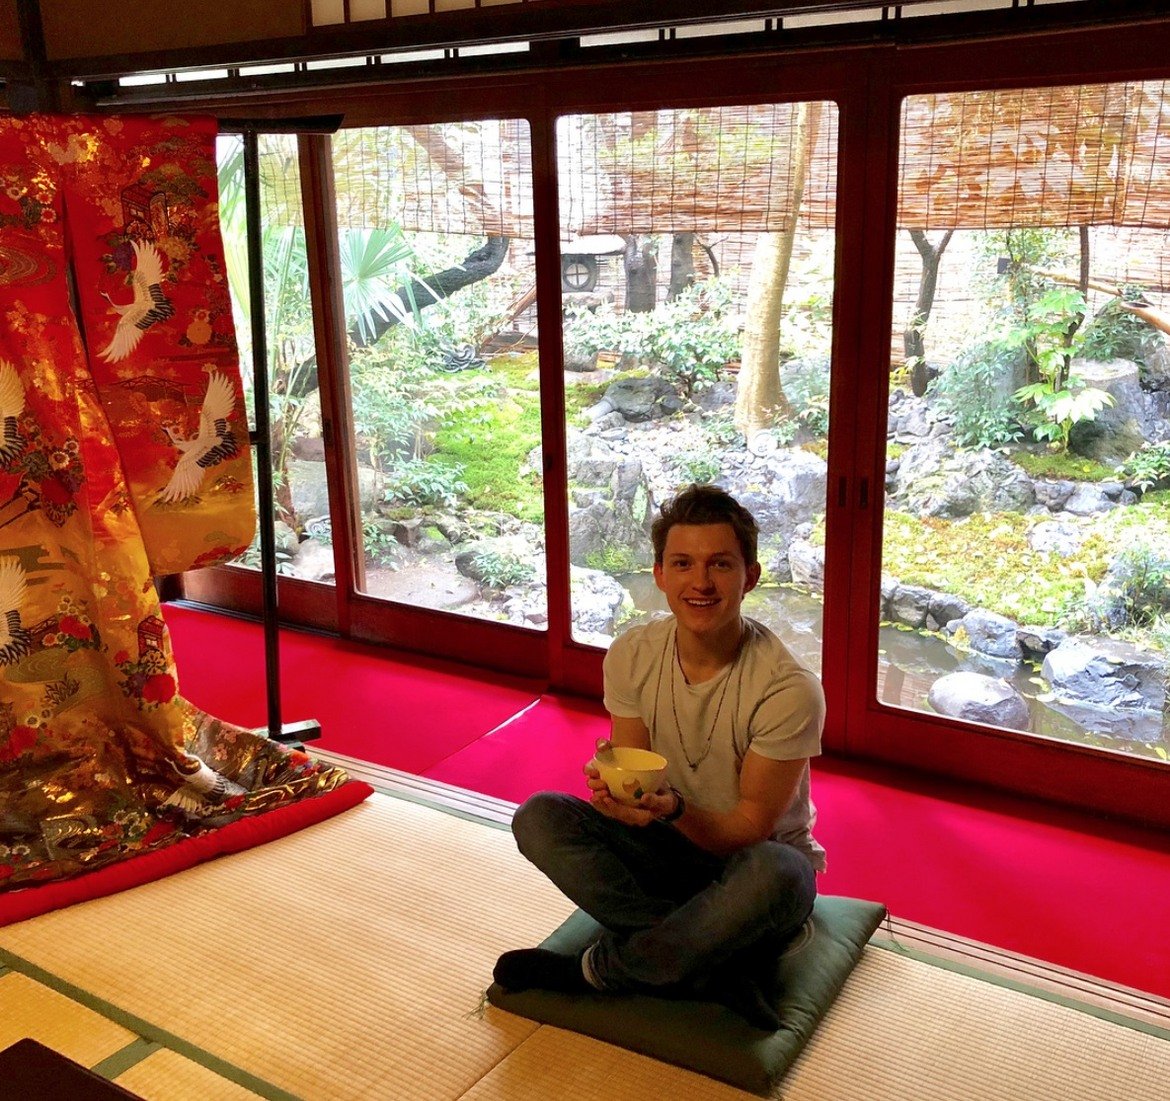  Том Холанд 

За тази снимка Холанд казва, че се радва на чаша чай, сервирана според всички правила на чайната церемония. Той посети Киото в Япония и присъства на автентична чайна церемония, наричана още "чадо".